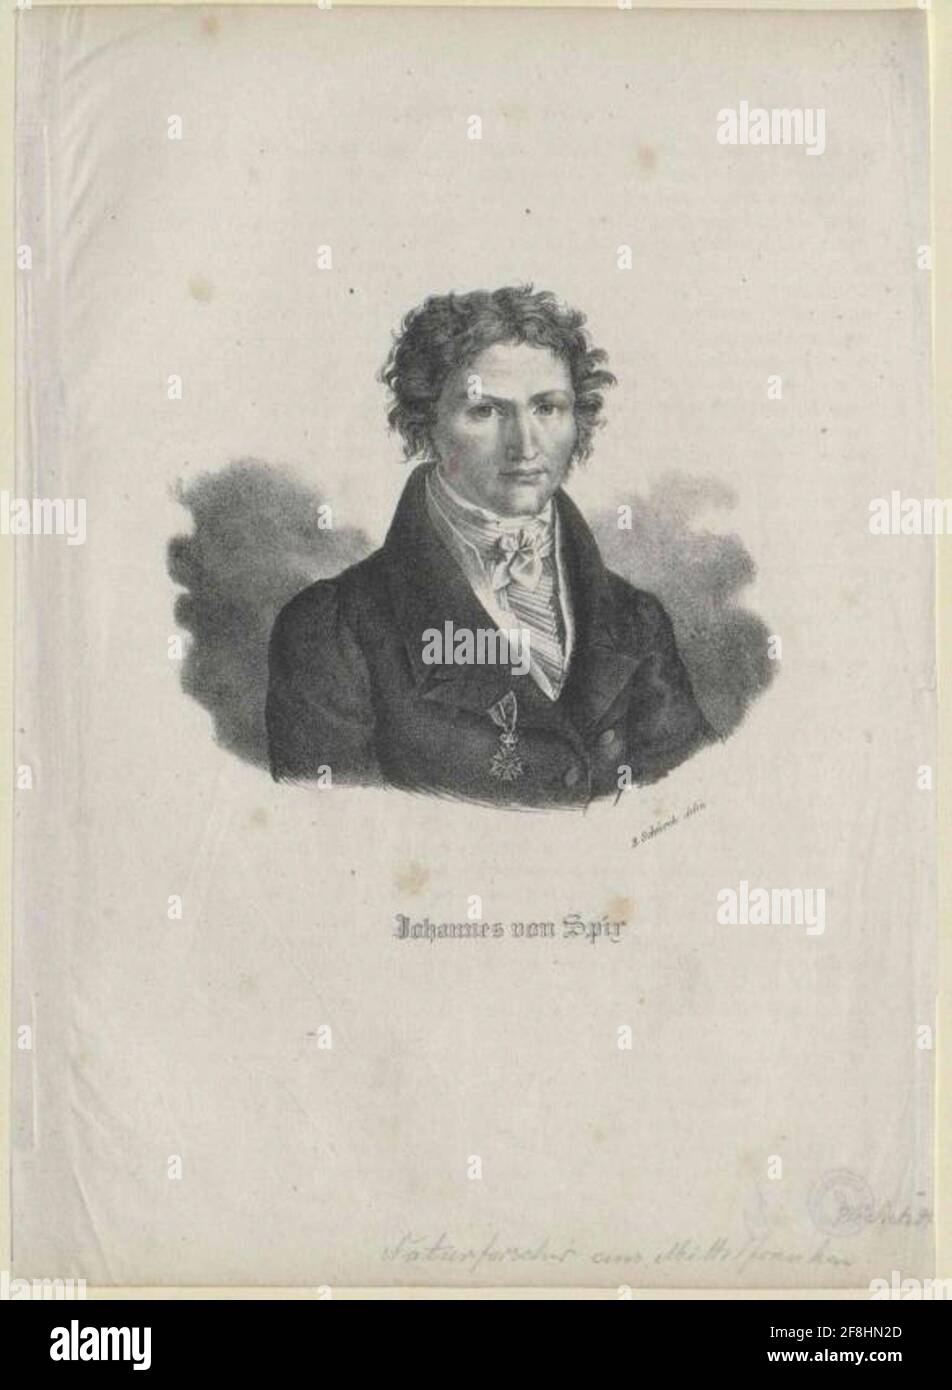 Spix, Johann von. Stock Photo